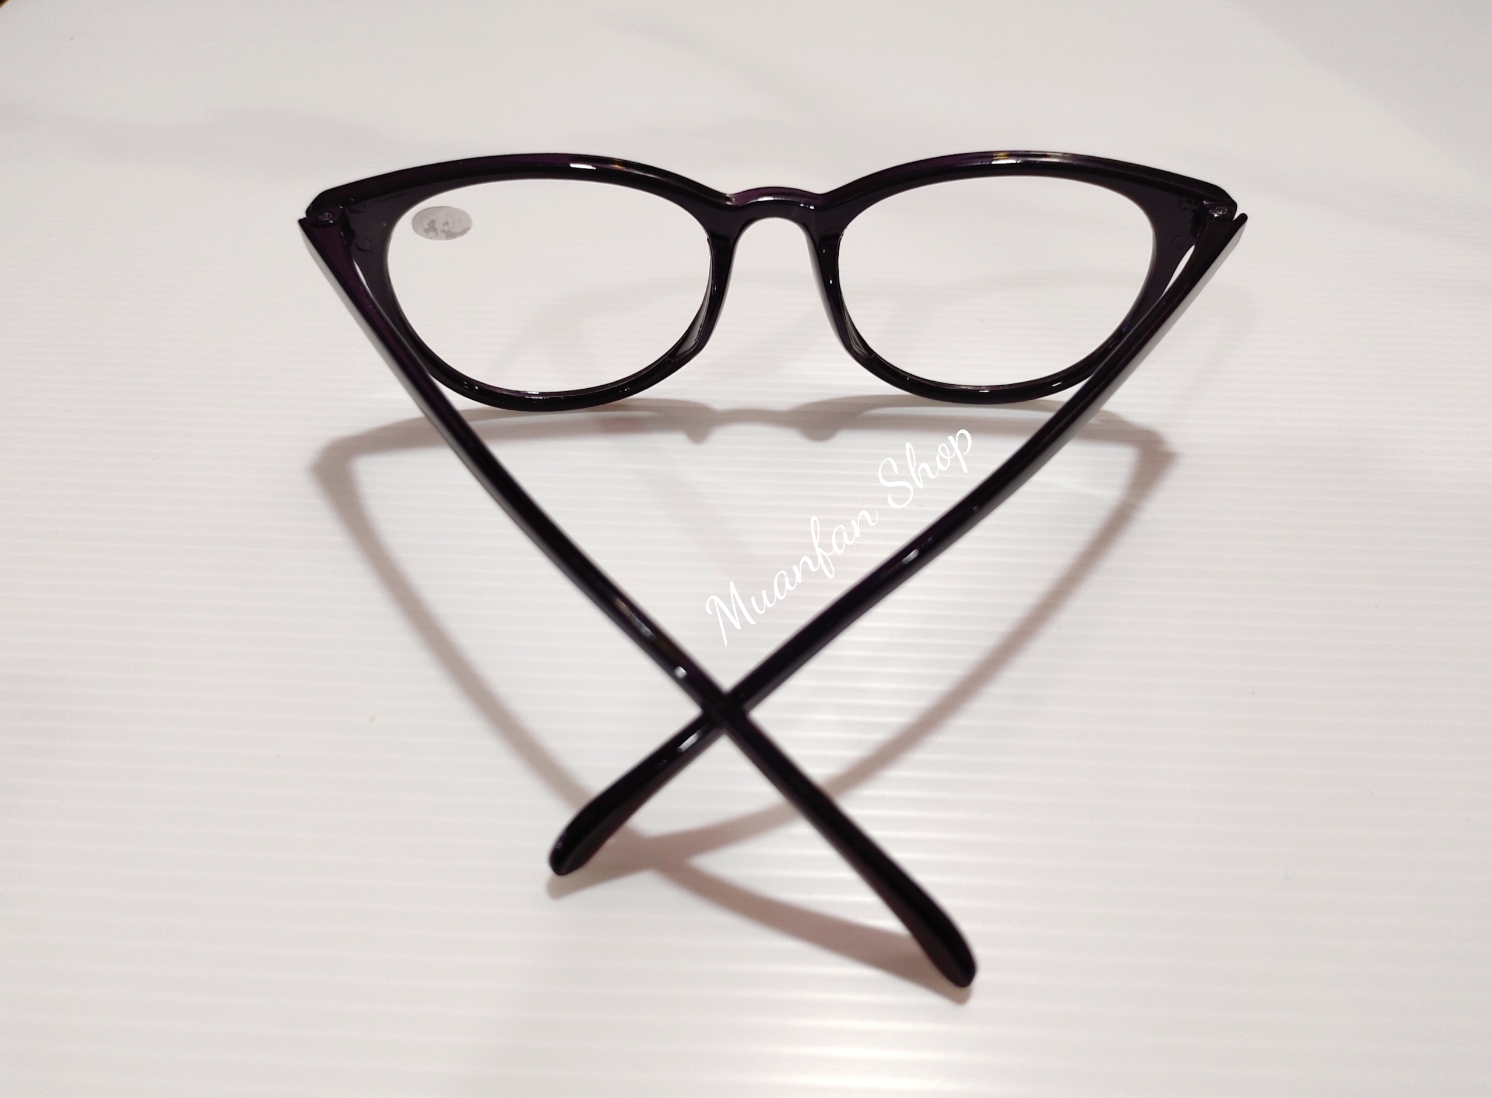 ข้อมูลเพิ่มเติมของ พร้อมส่ง❗❗ แว่นตาสายตายาว สุดคลาสสิค กรอบสีดำล้วน ทรงยอดฮิต ค่าสายตายาวเริ่มต้น +0.50 - +4.00 แถมฟรีผ้าเช็ดแว่นตาพร้อมซองใส่แว่นตากันรอย